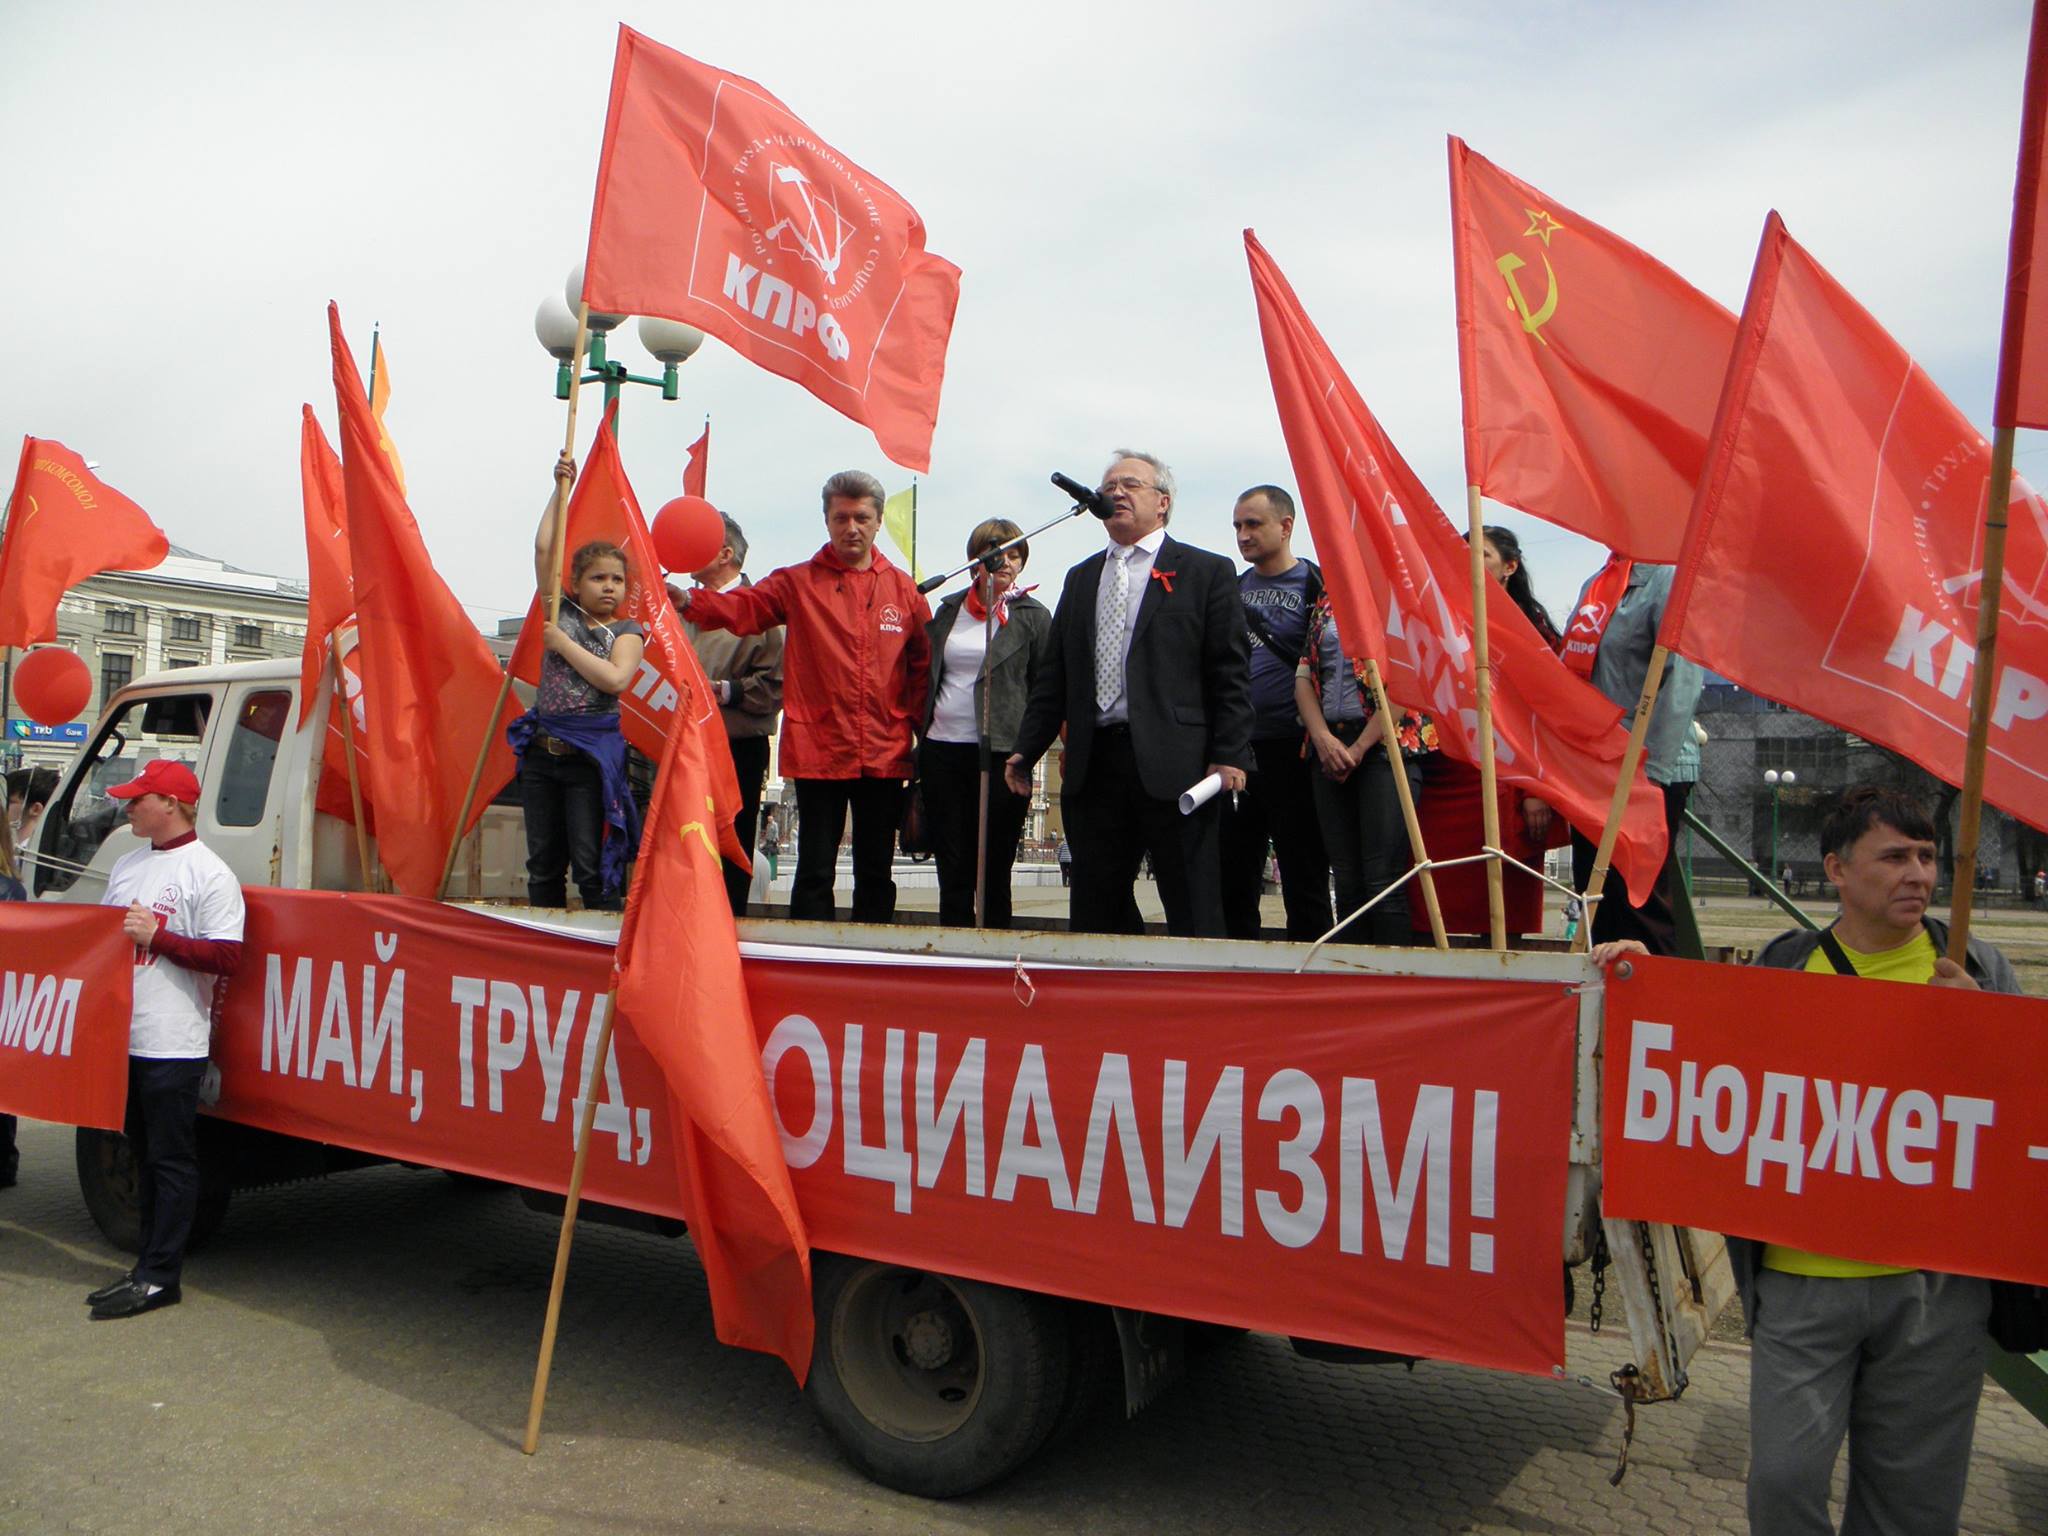 «Идите общим строем»: губернатор предложил коммунистам на Первомай прошагать рядом с партией власти